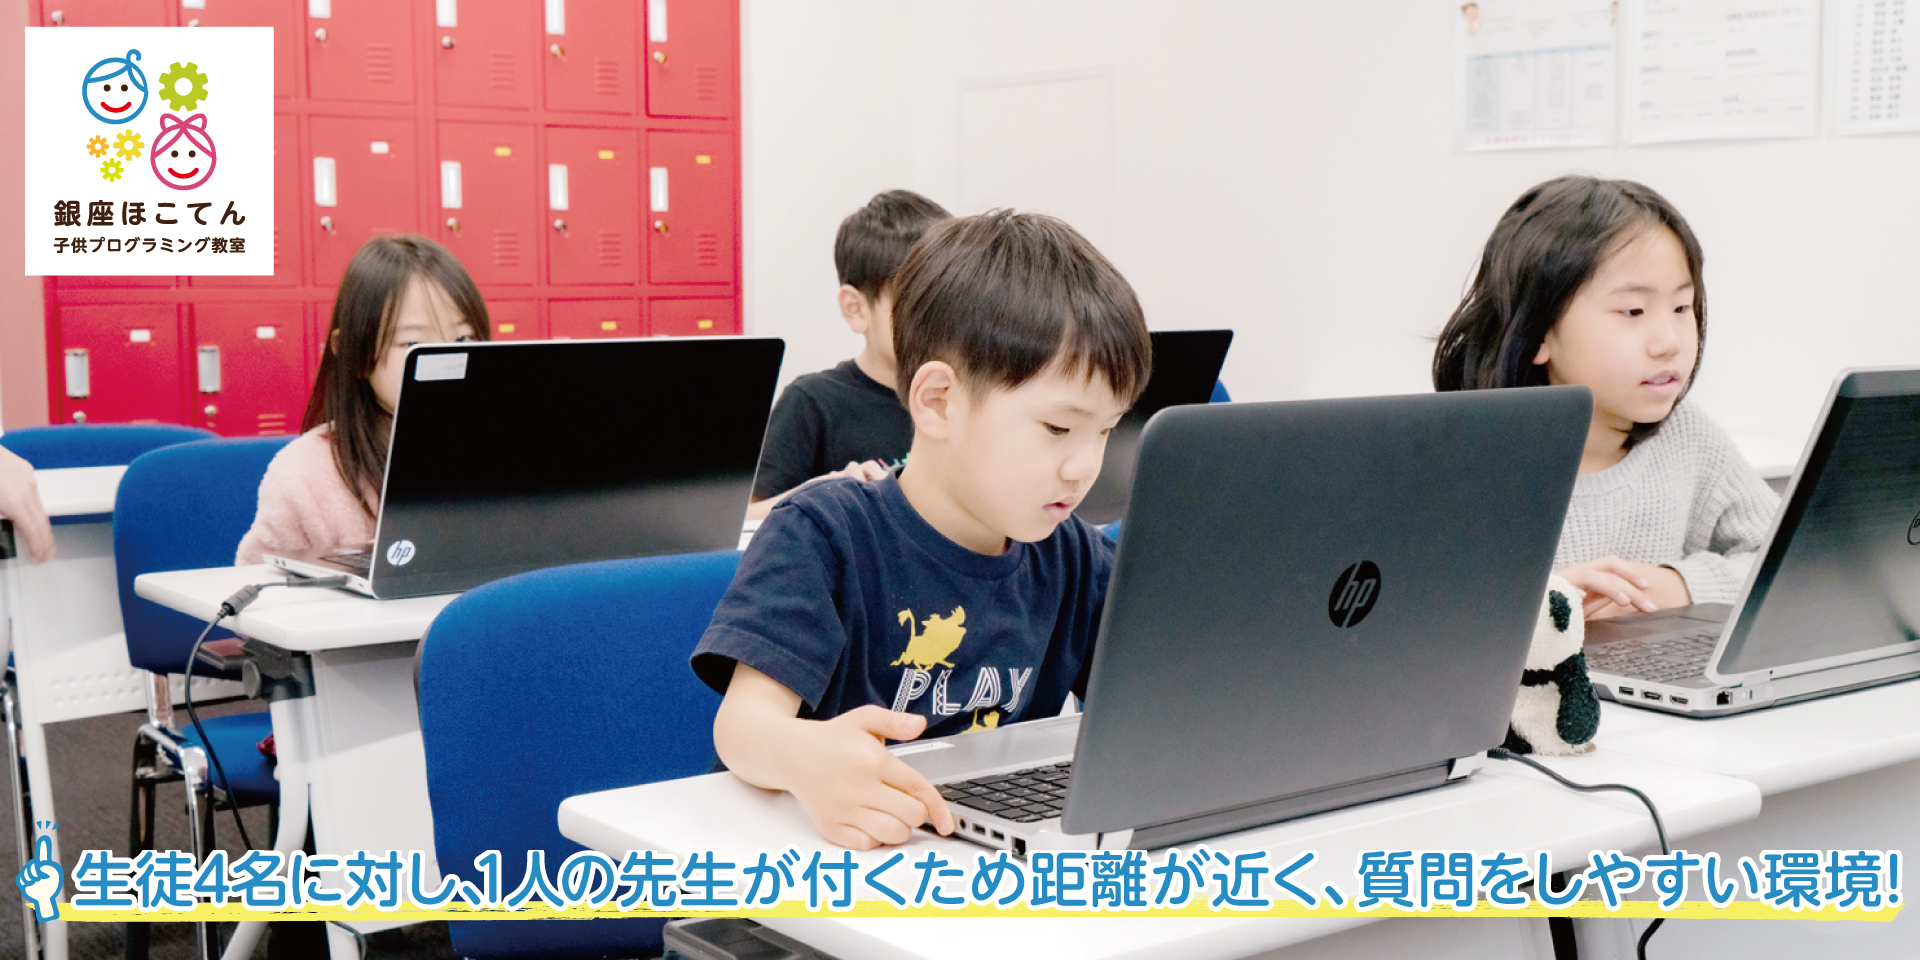 銀座ほこてん子供プログラミング教室